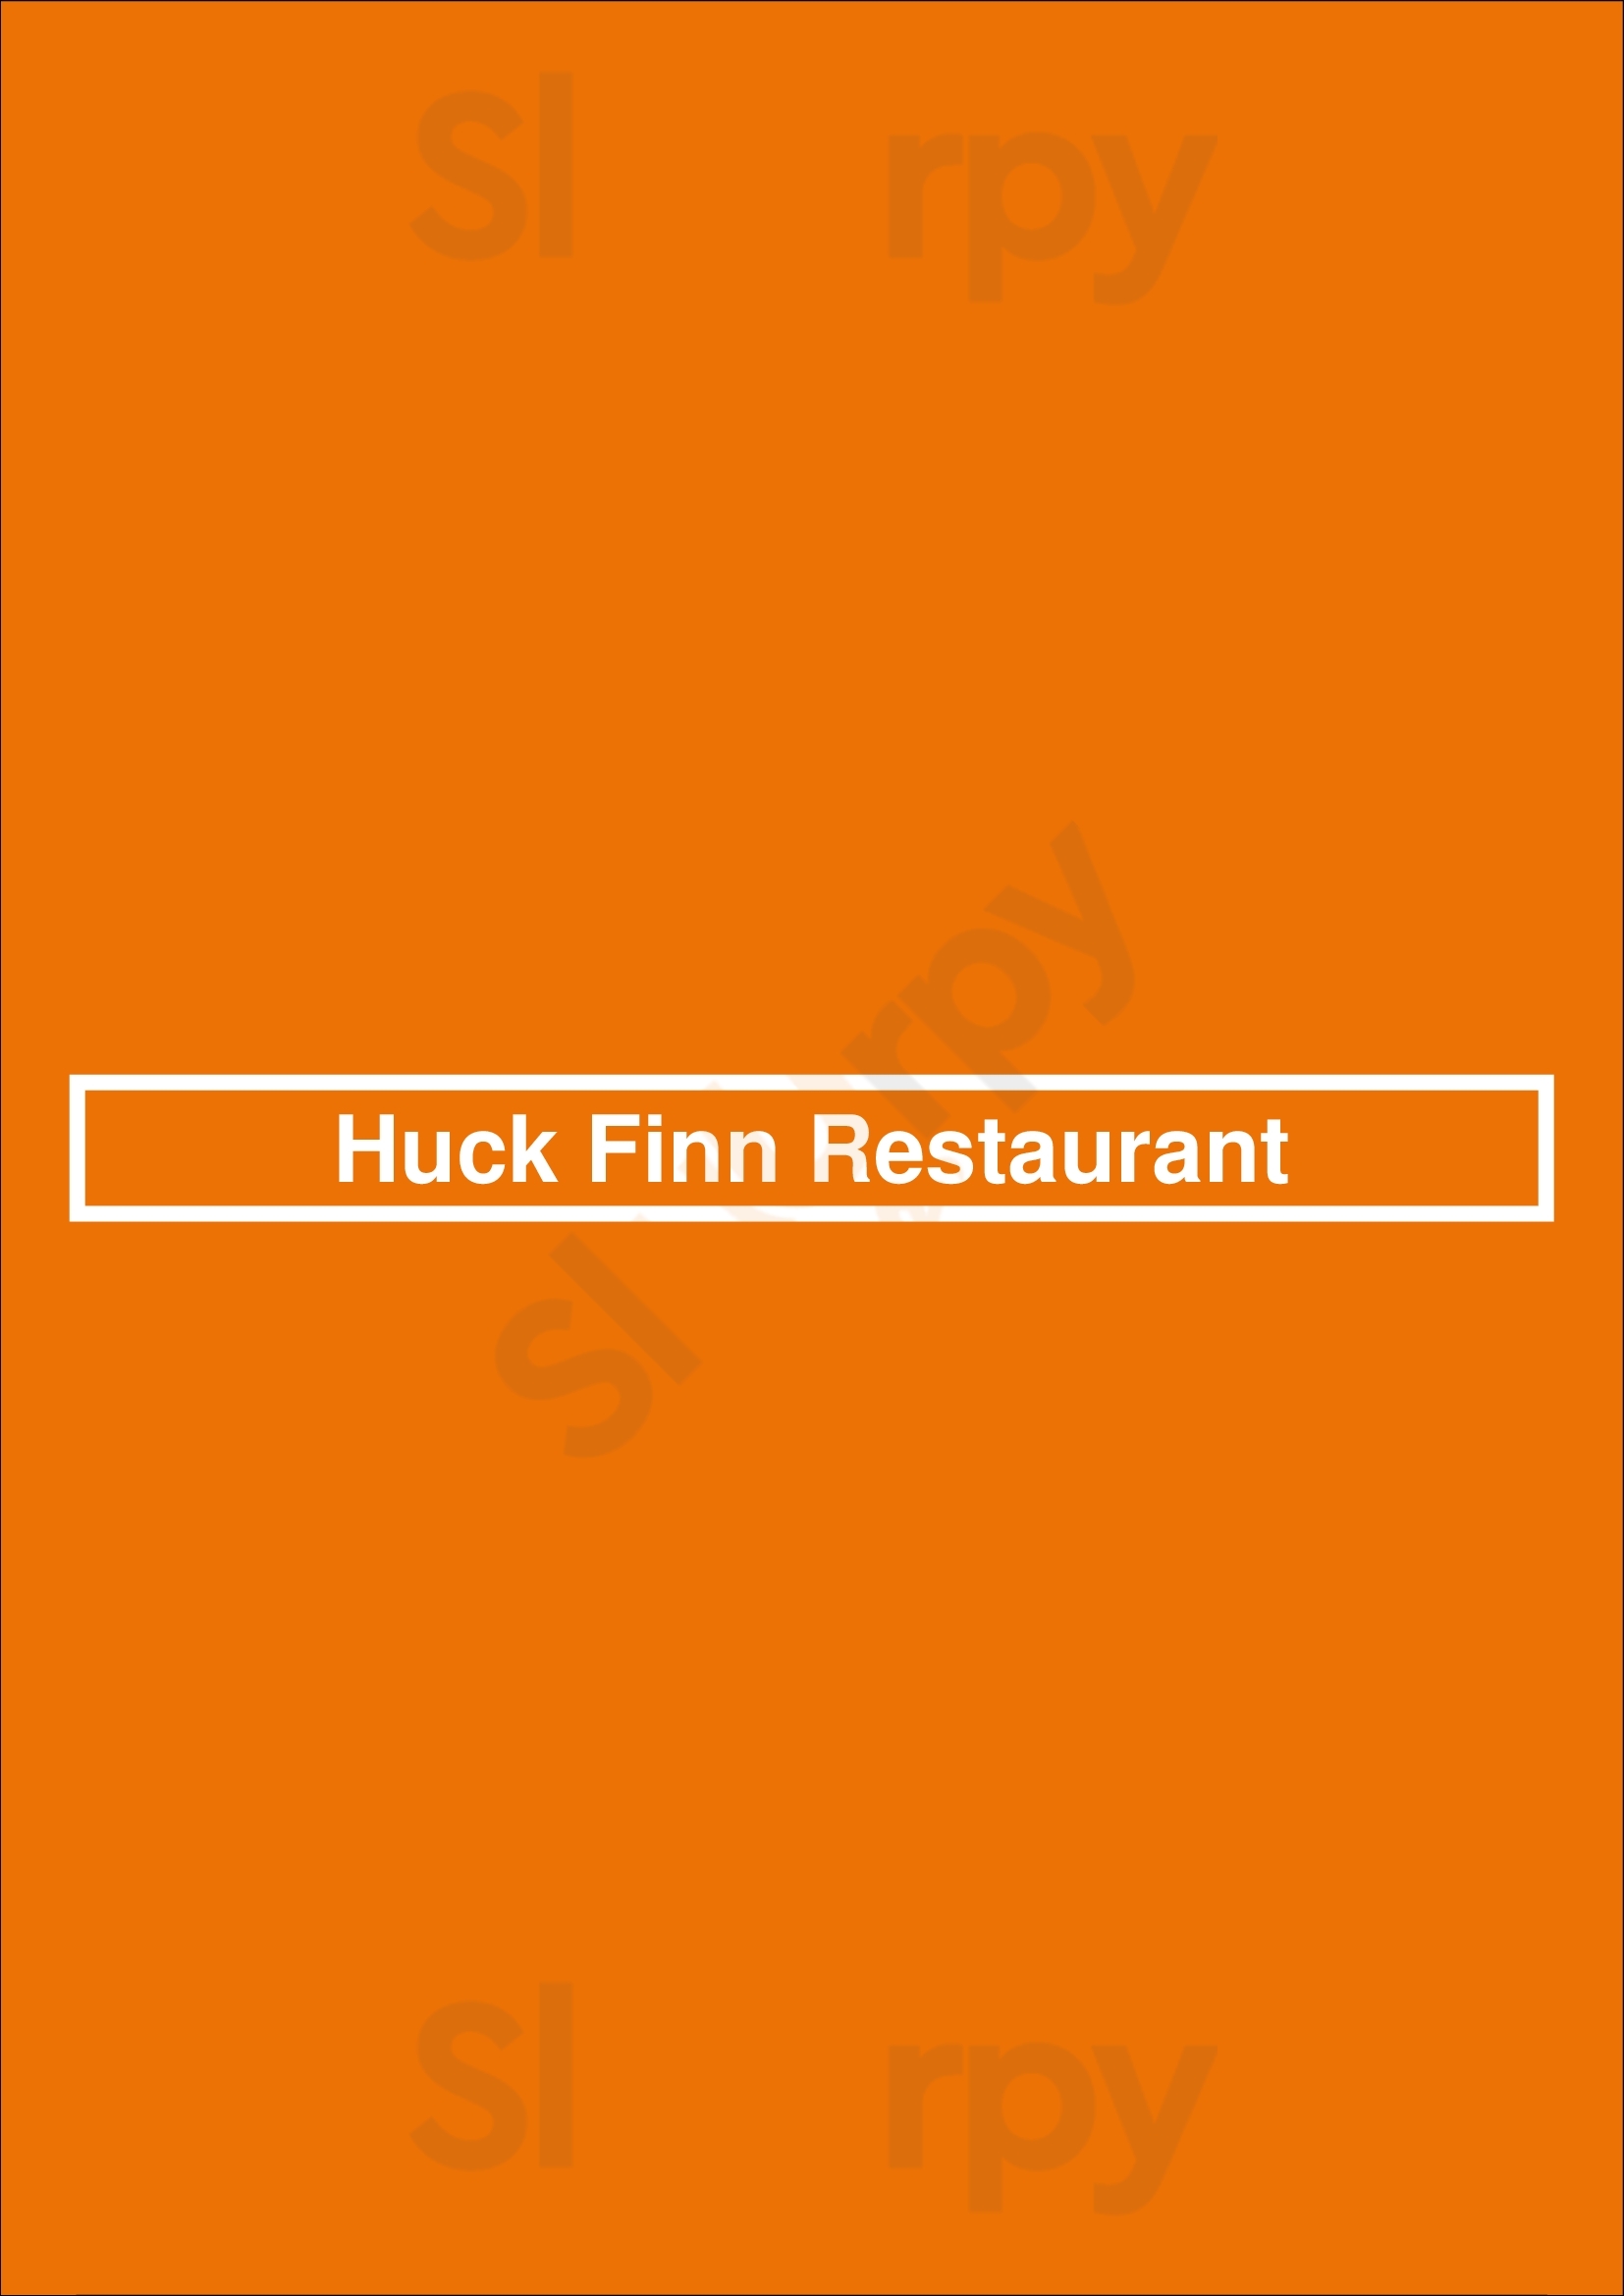 Huck Finn Restaurant Chicago Menu - 1